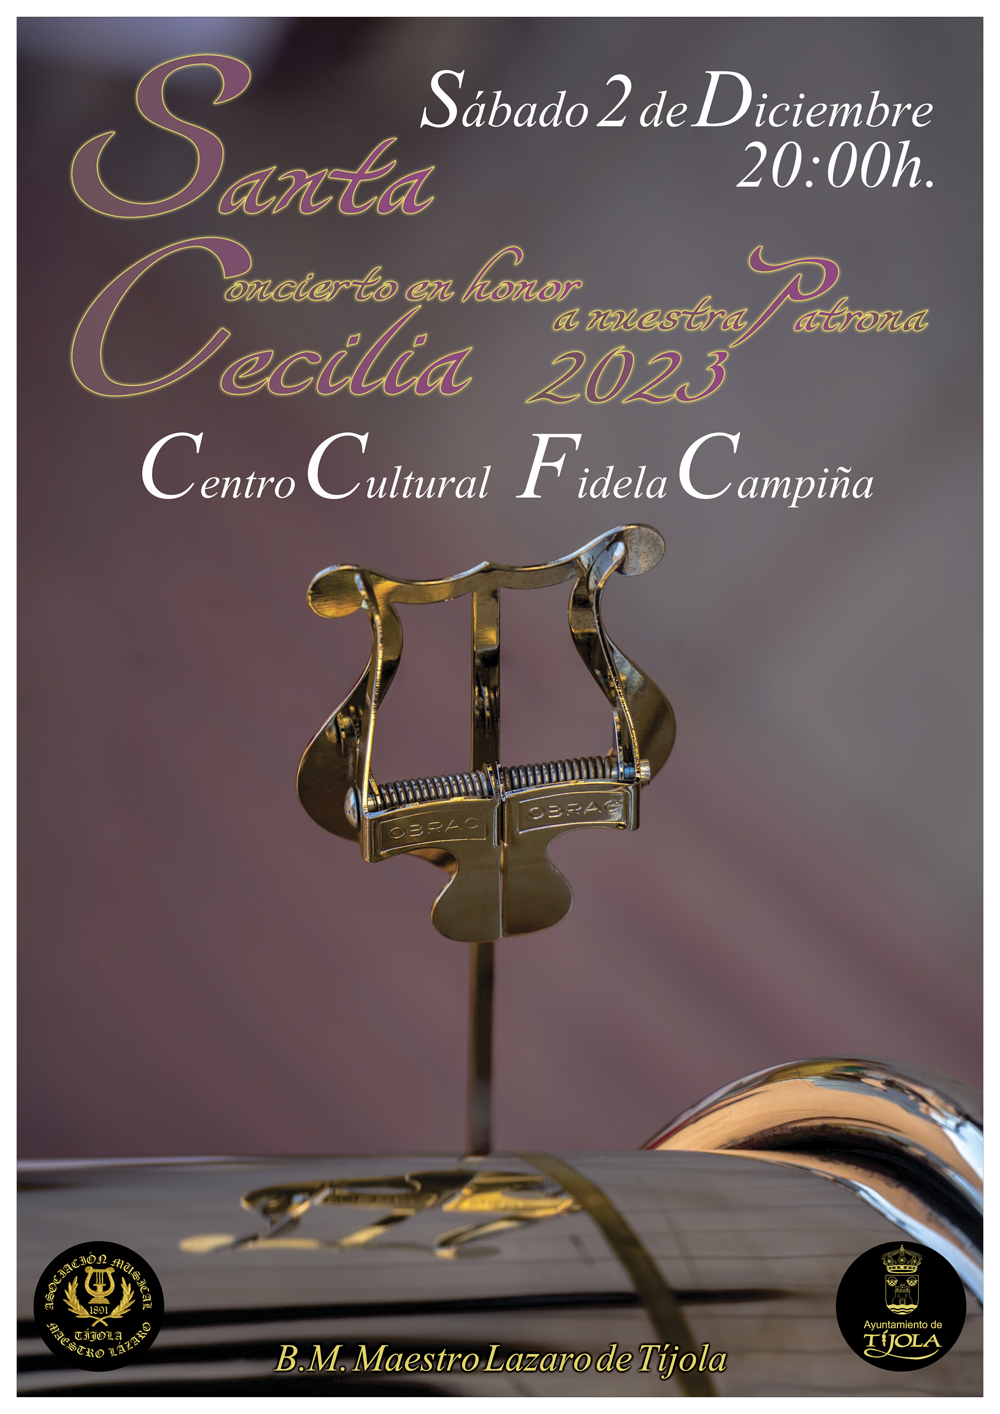 Imagen del Cartel del Concierto en honor a Santa Cecilia 2023. Con imagen de pinza de instrumento con forma de lira al fondo e información.